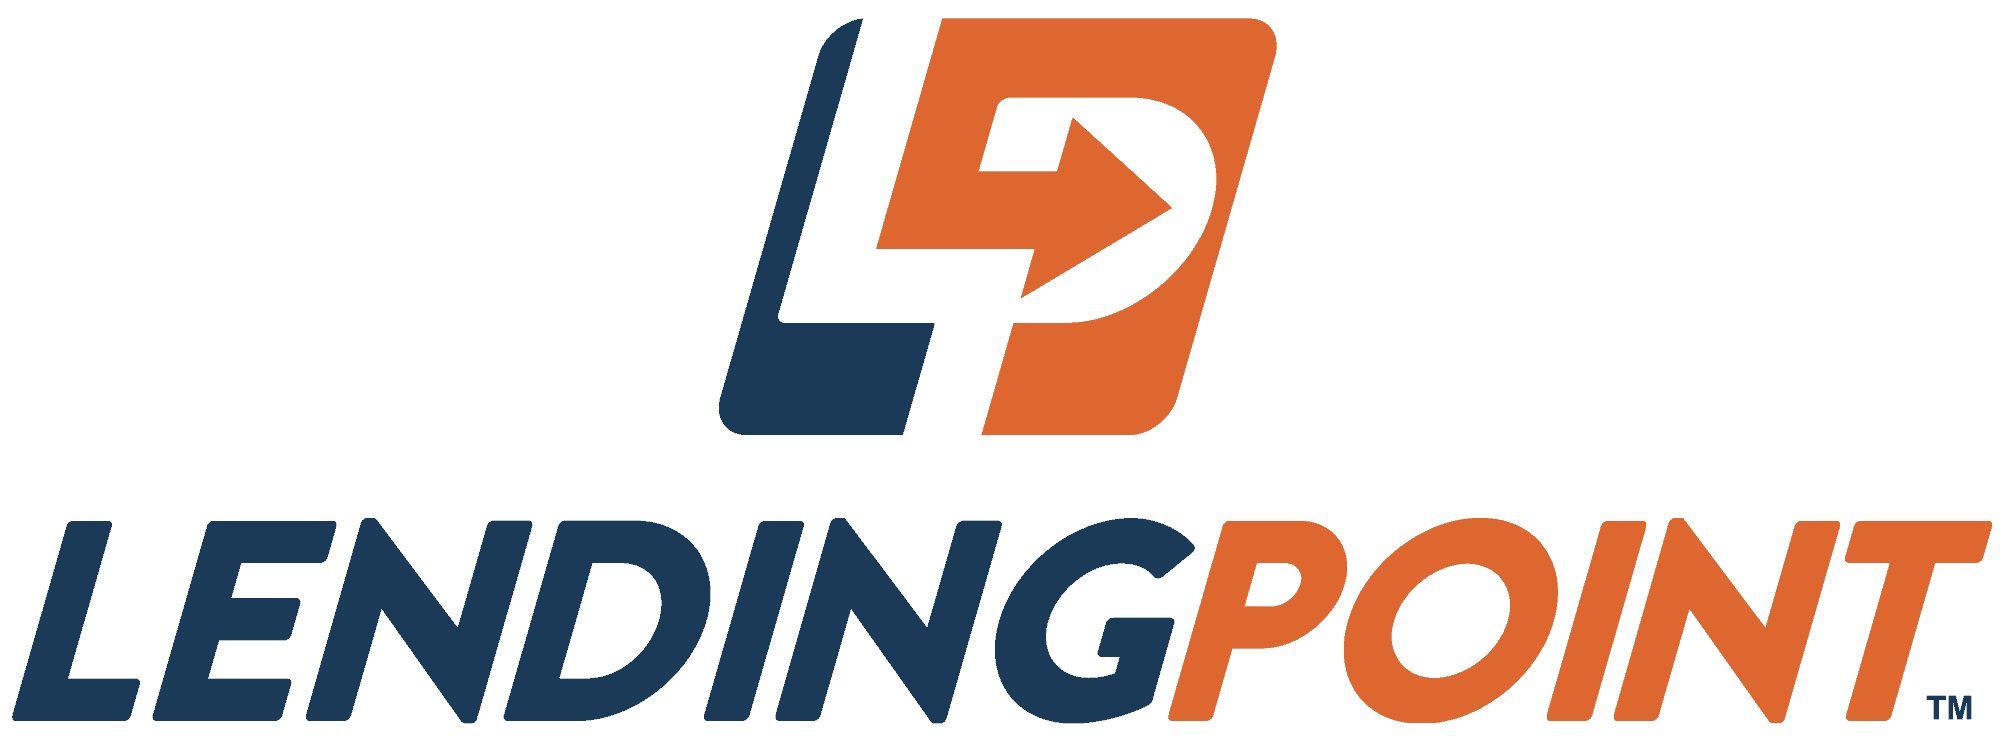 LendingPoint 